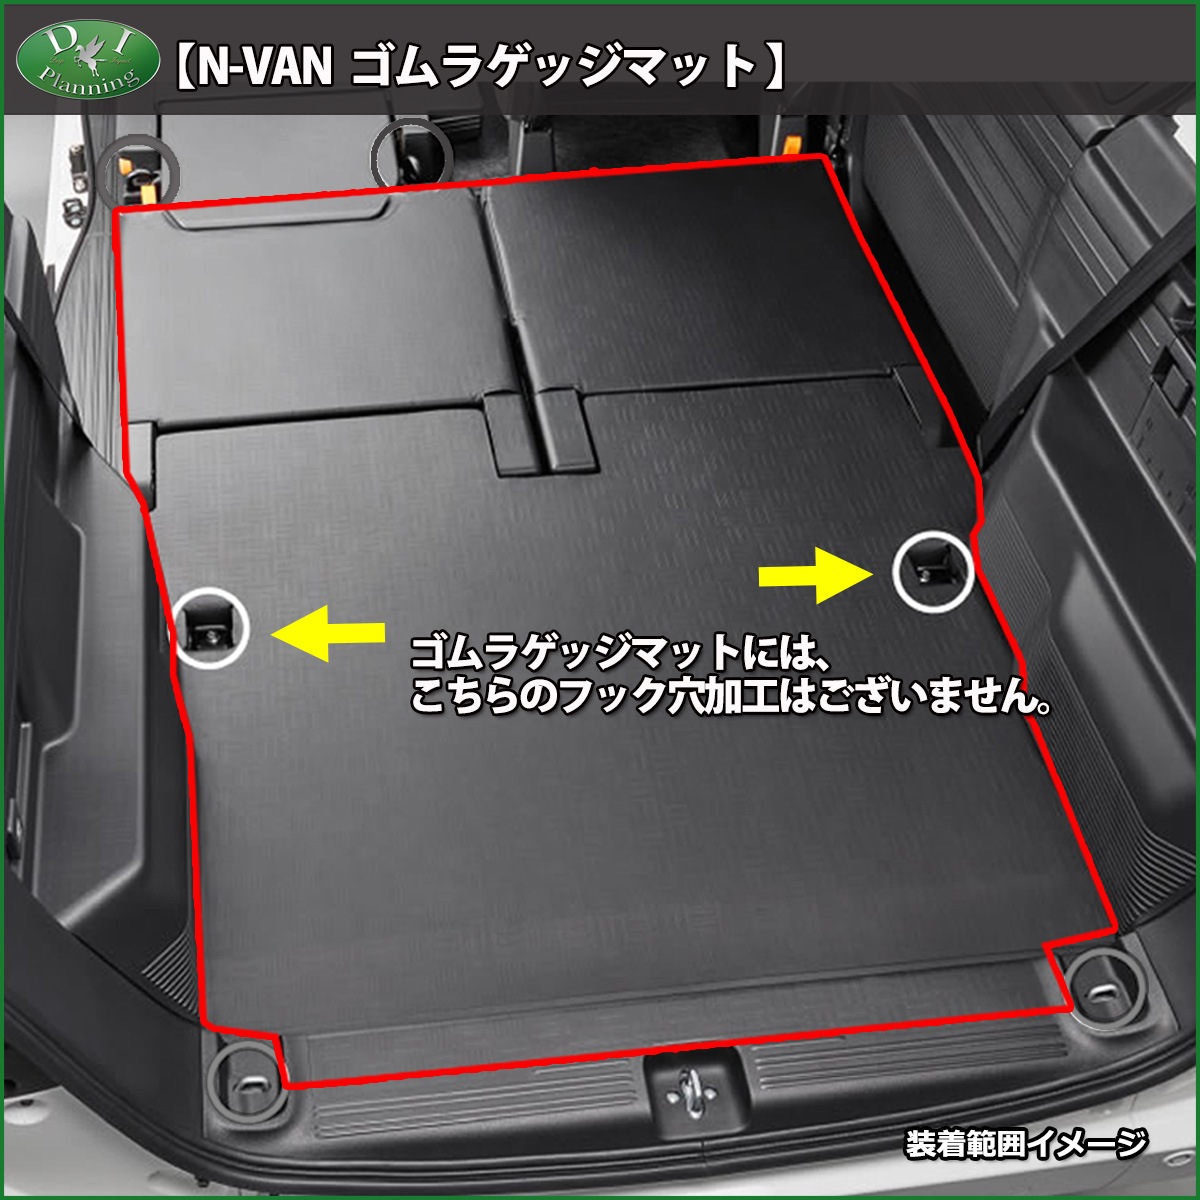 N-VAN  NVAN エヌバン Nバン JJ1 JJ2 のゴムラゲッジマット ラバーマット はカーゴマット ラゲッジルームとしておすすめです